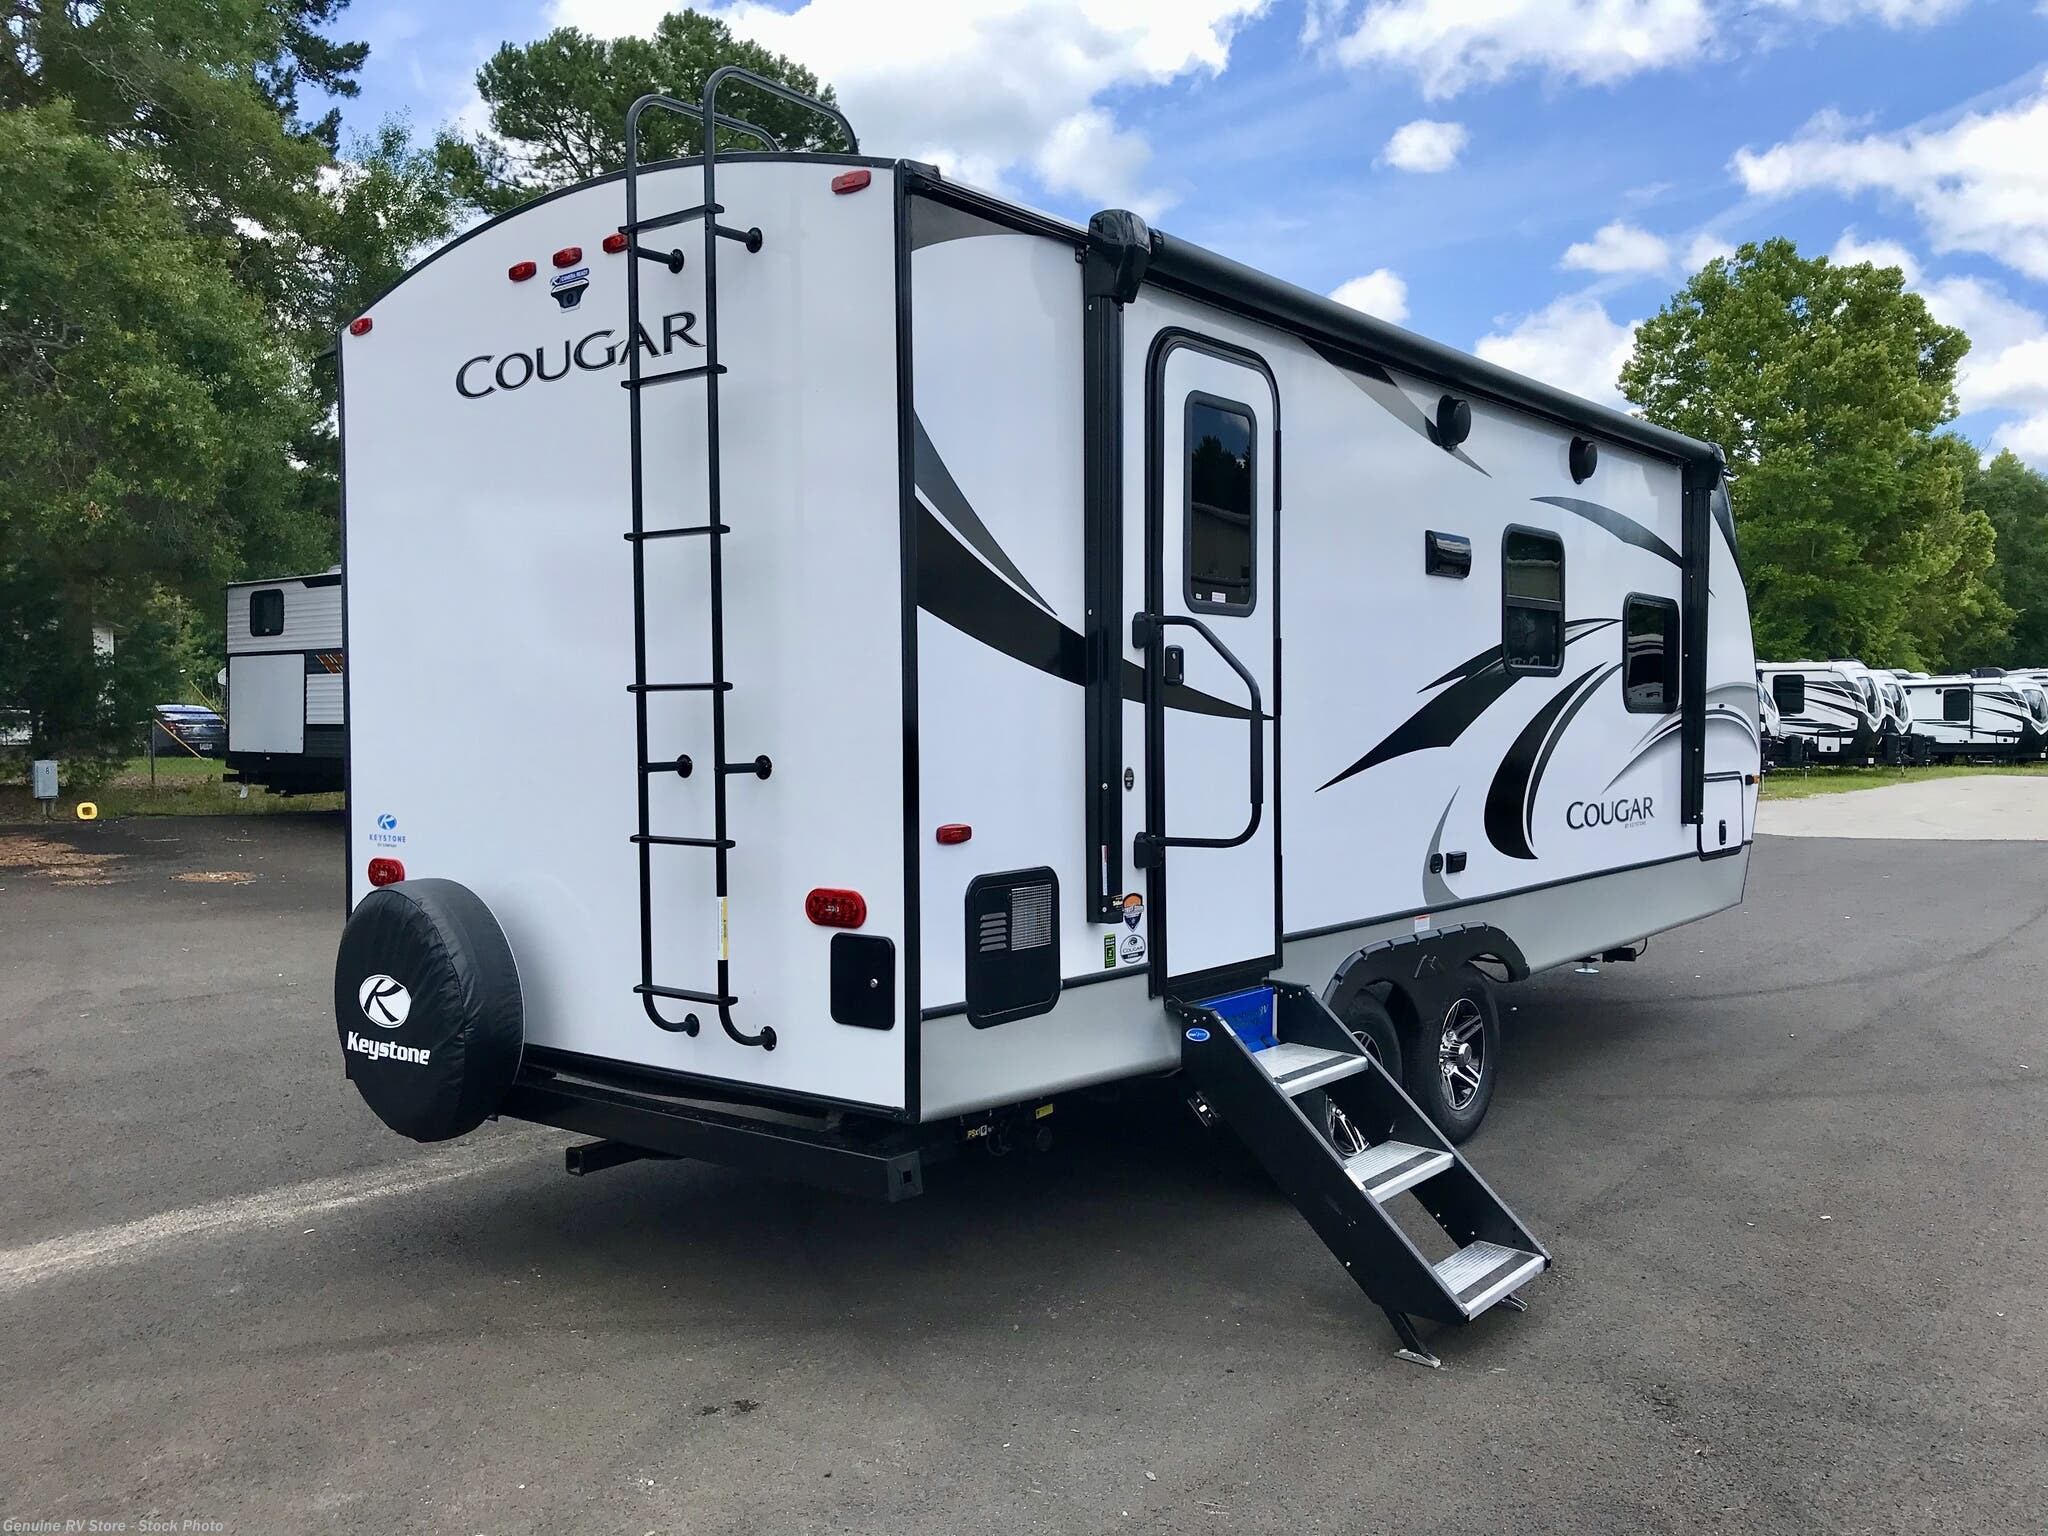 22 ft cougar travel trailer